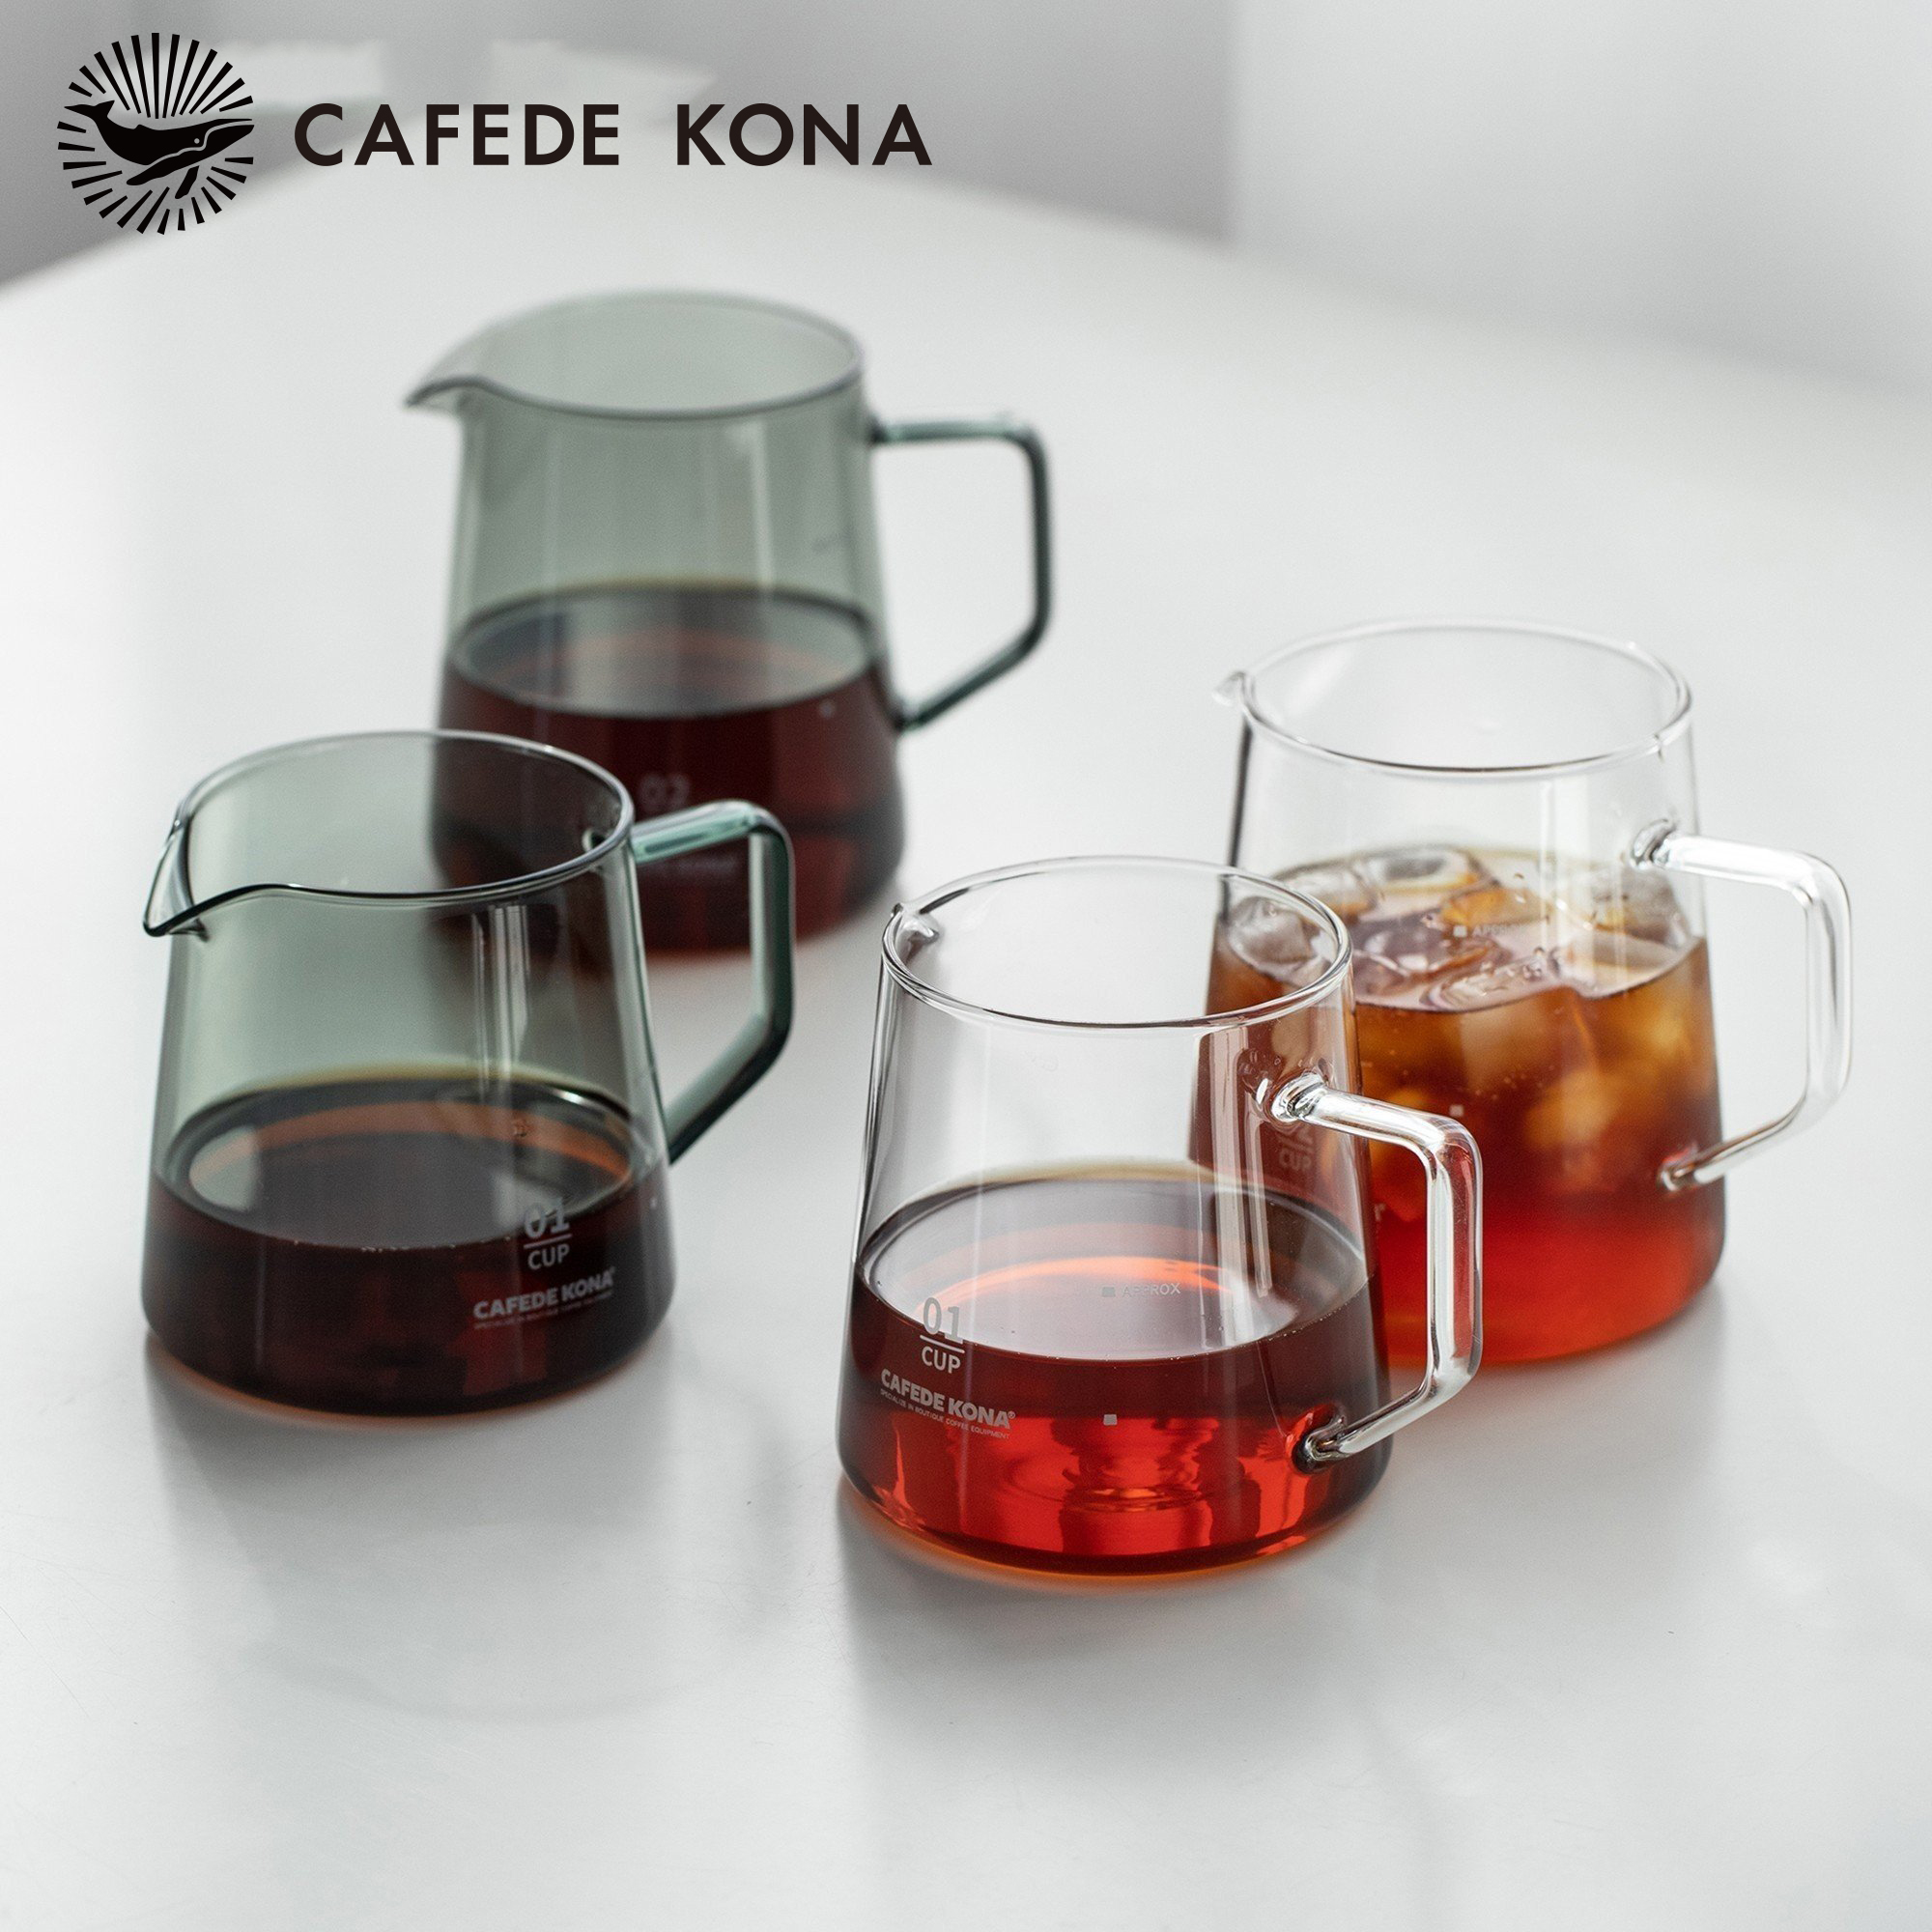 Bình thuỷ tinh phục vụ cà phê CAFE DE KONA